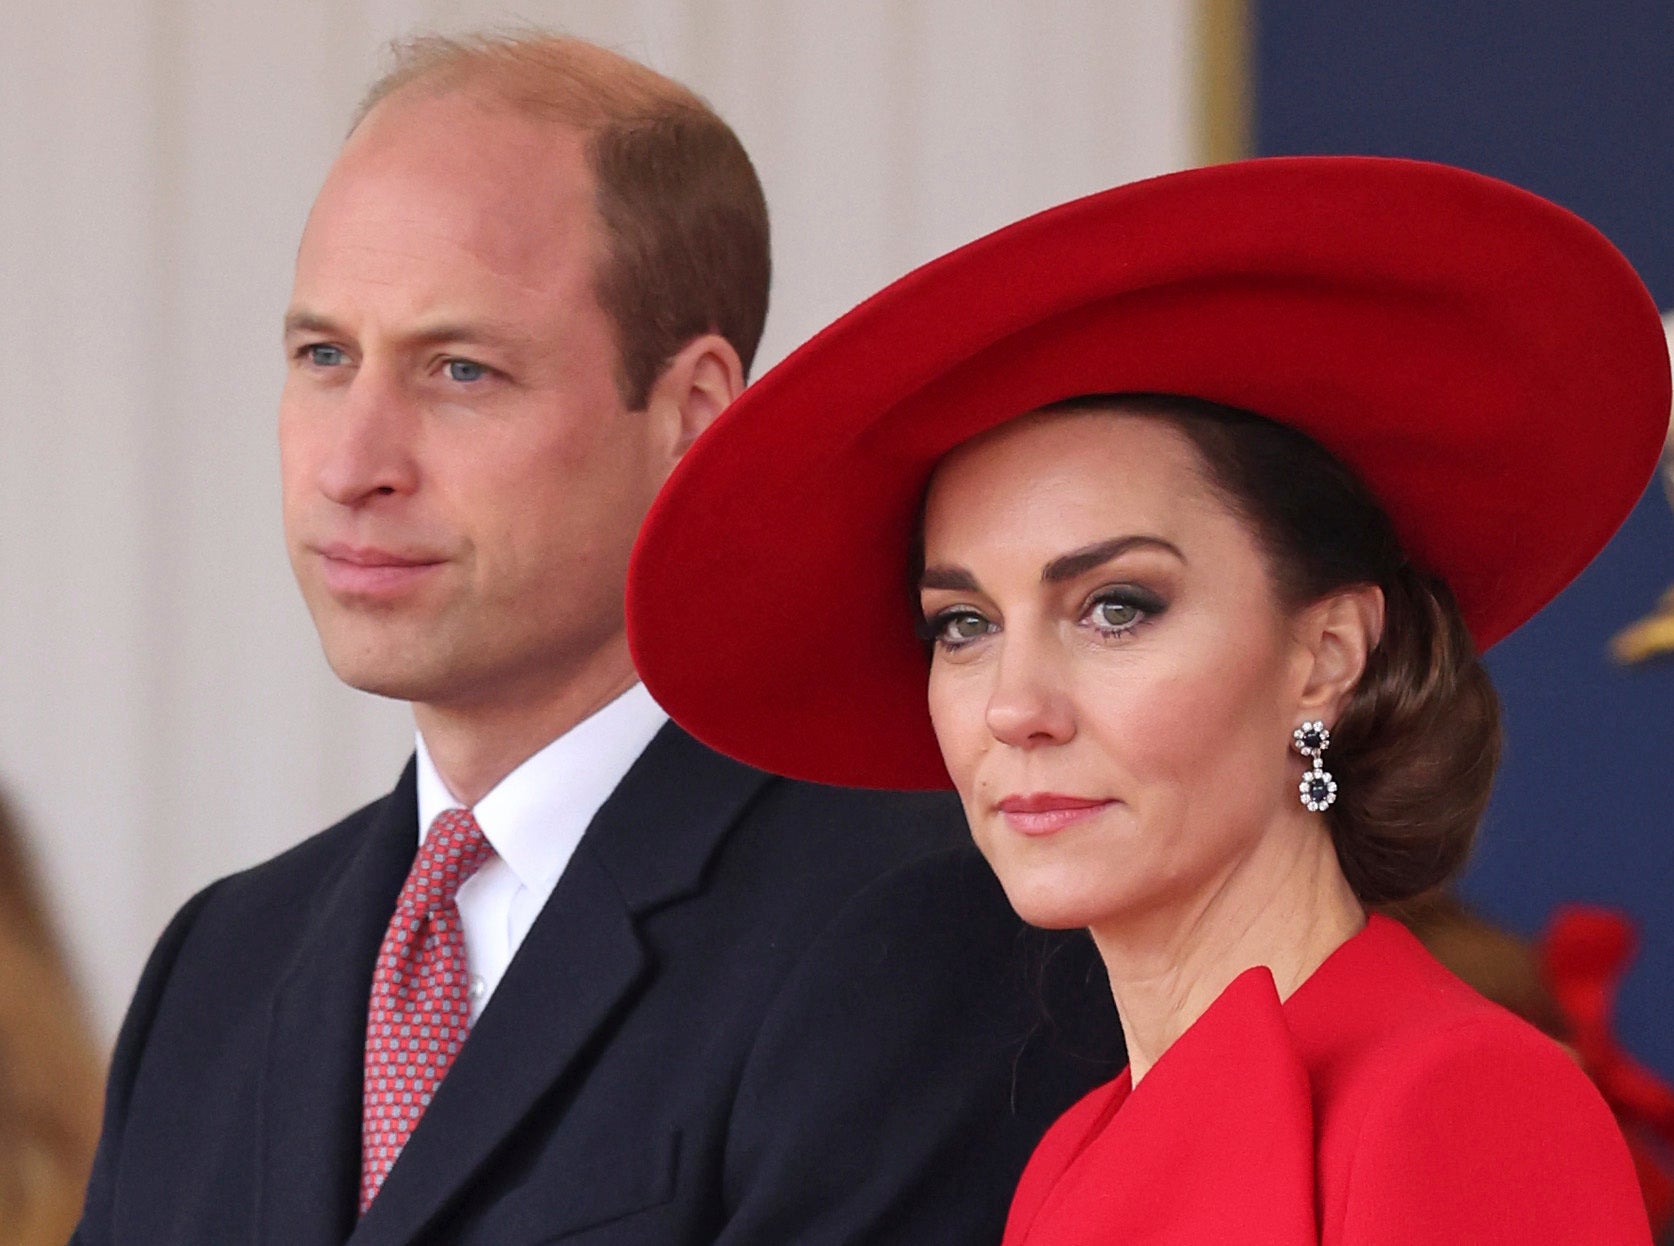 Se anunció que a Carlos le diagnosticaron el cáncer poco después de que Kate Middleton se sometiera a una cirugía. Se desconocen los motivos por el procedimiento de la esposa del príncipe William.